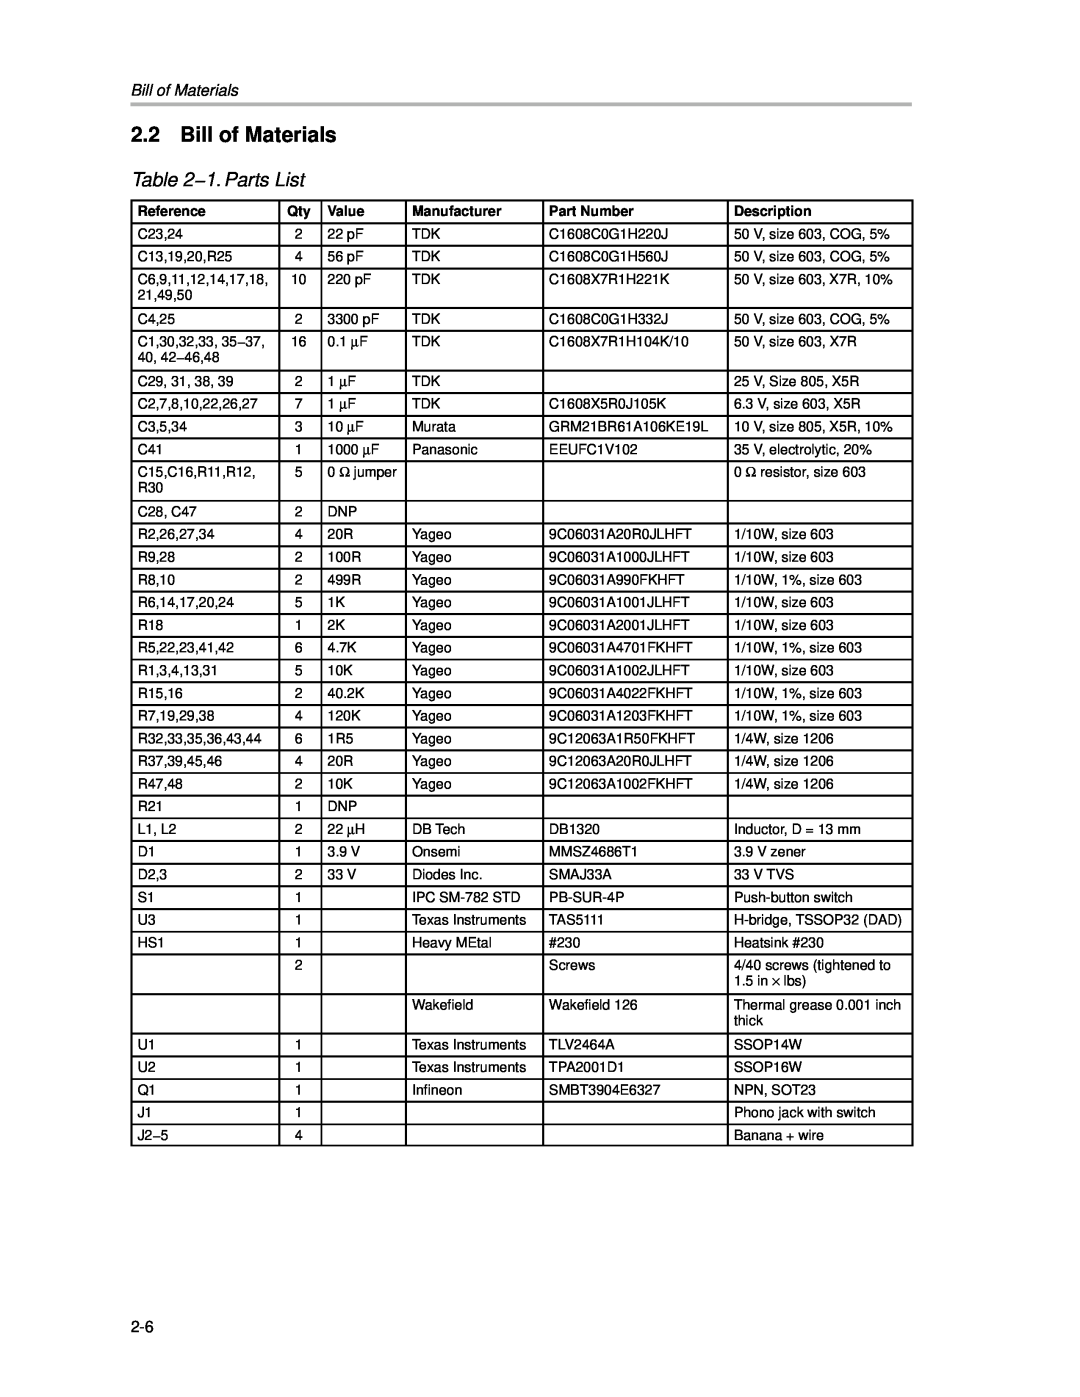 Texas Instruments APA100 manual Bill of Materials, 1. Parts List 